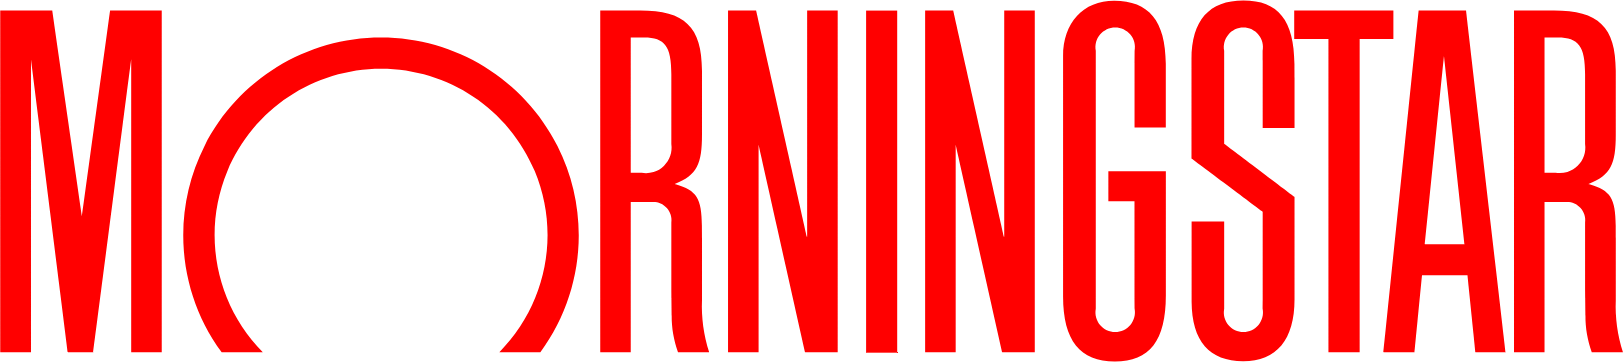 Morningstar
 logo large (transparent PNG)